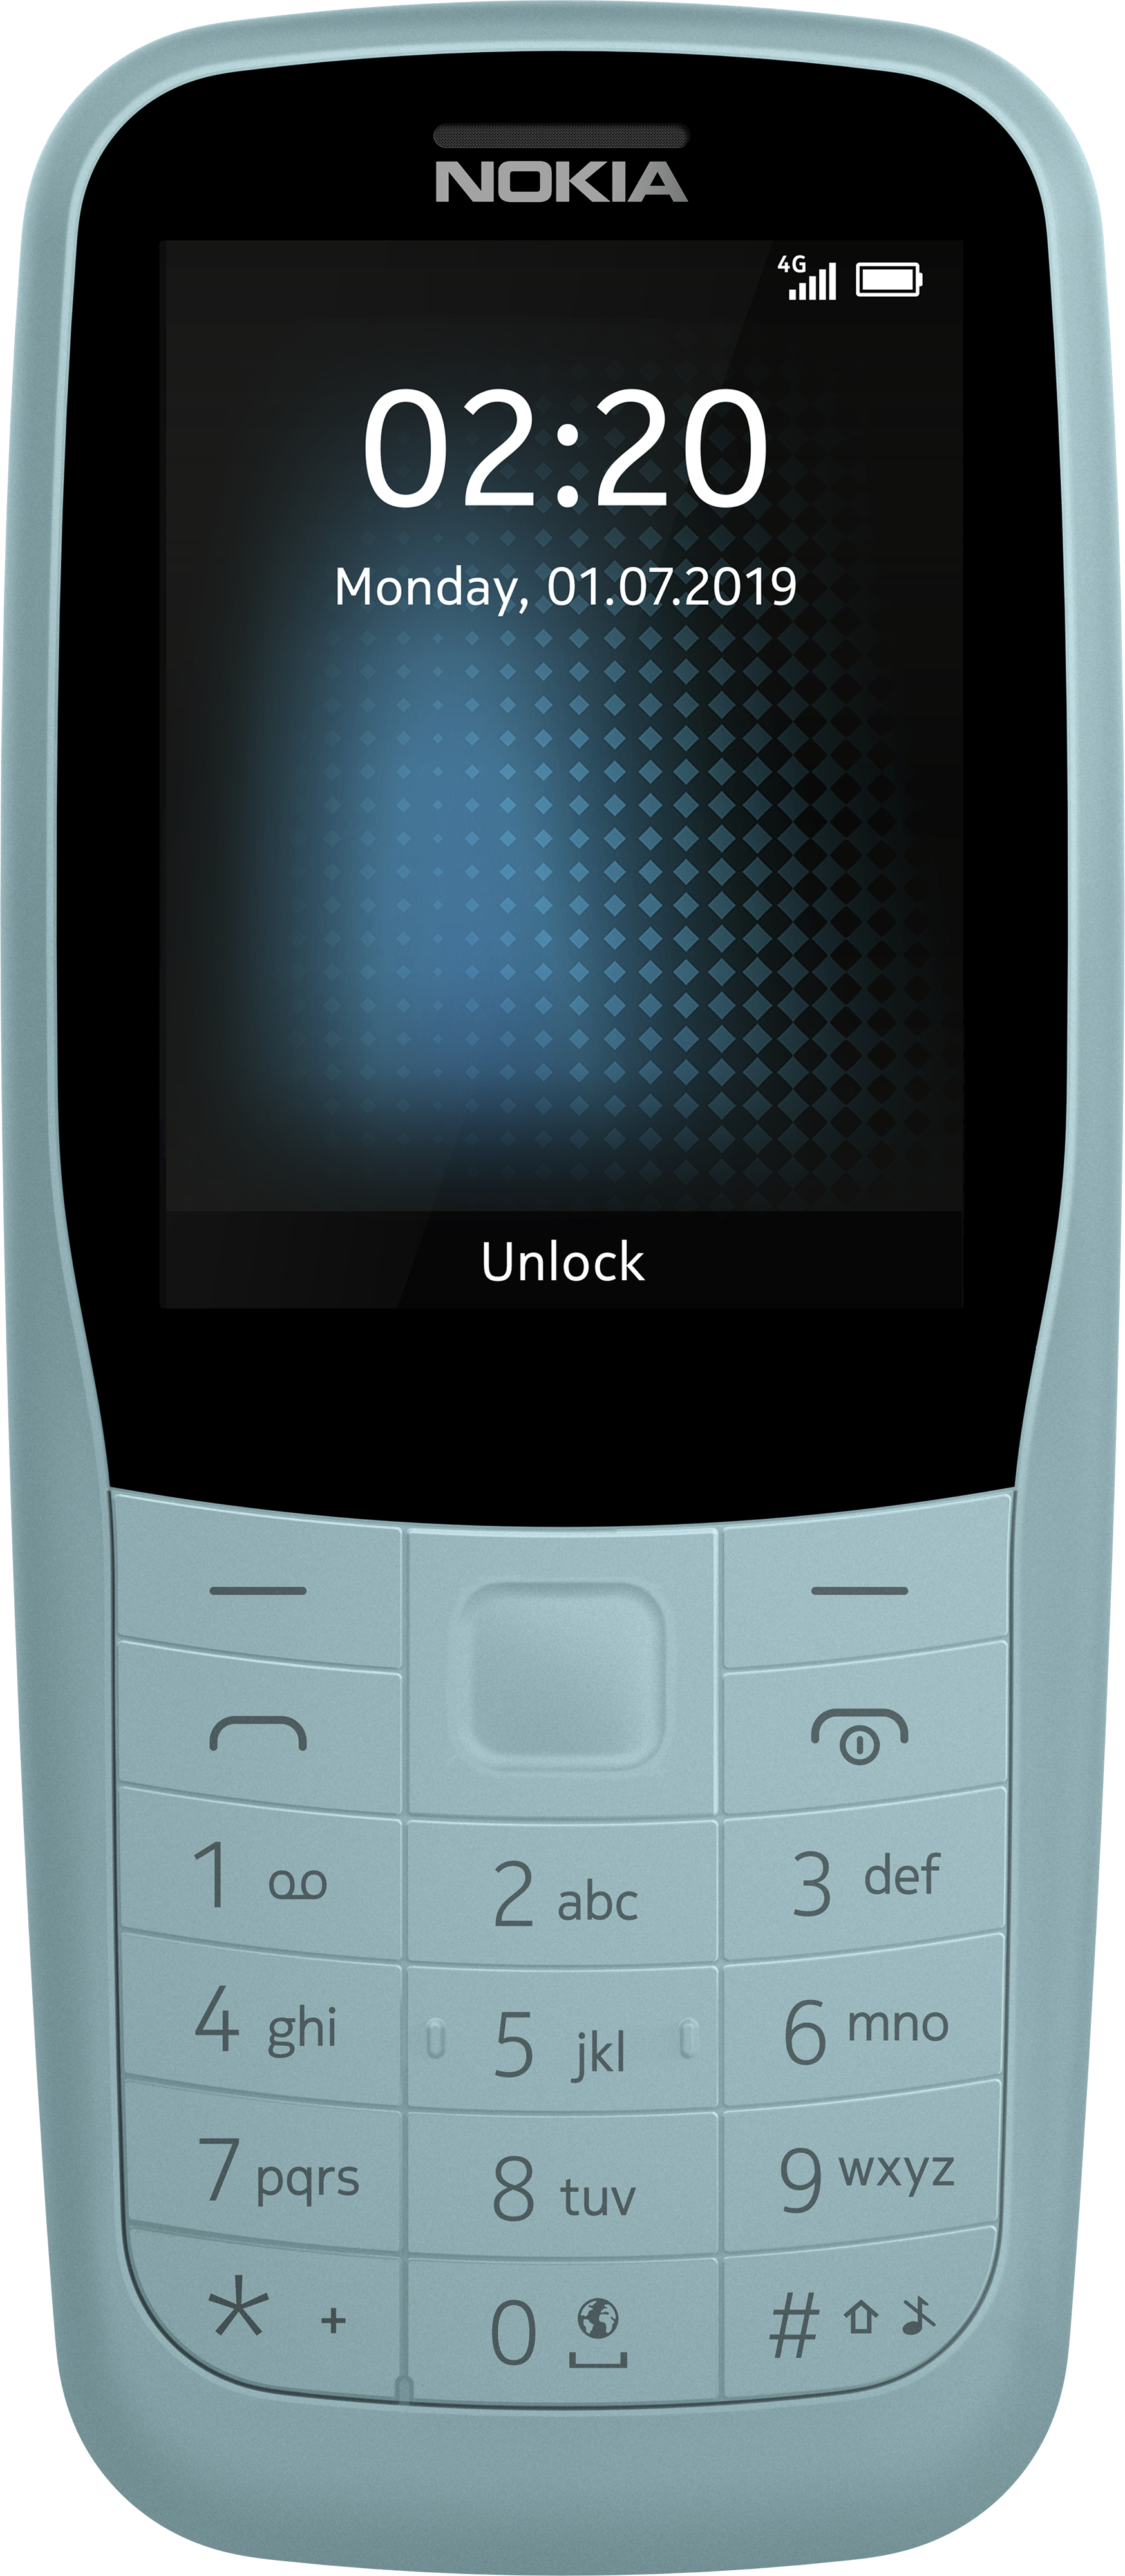 العد توضيح مأساة  Nokia 220 4G